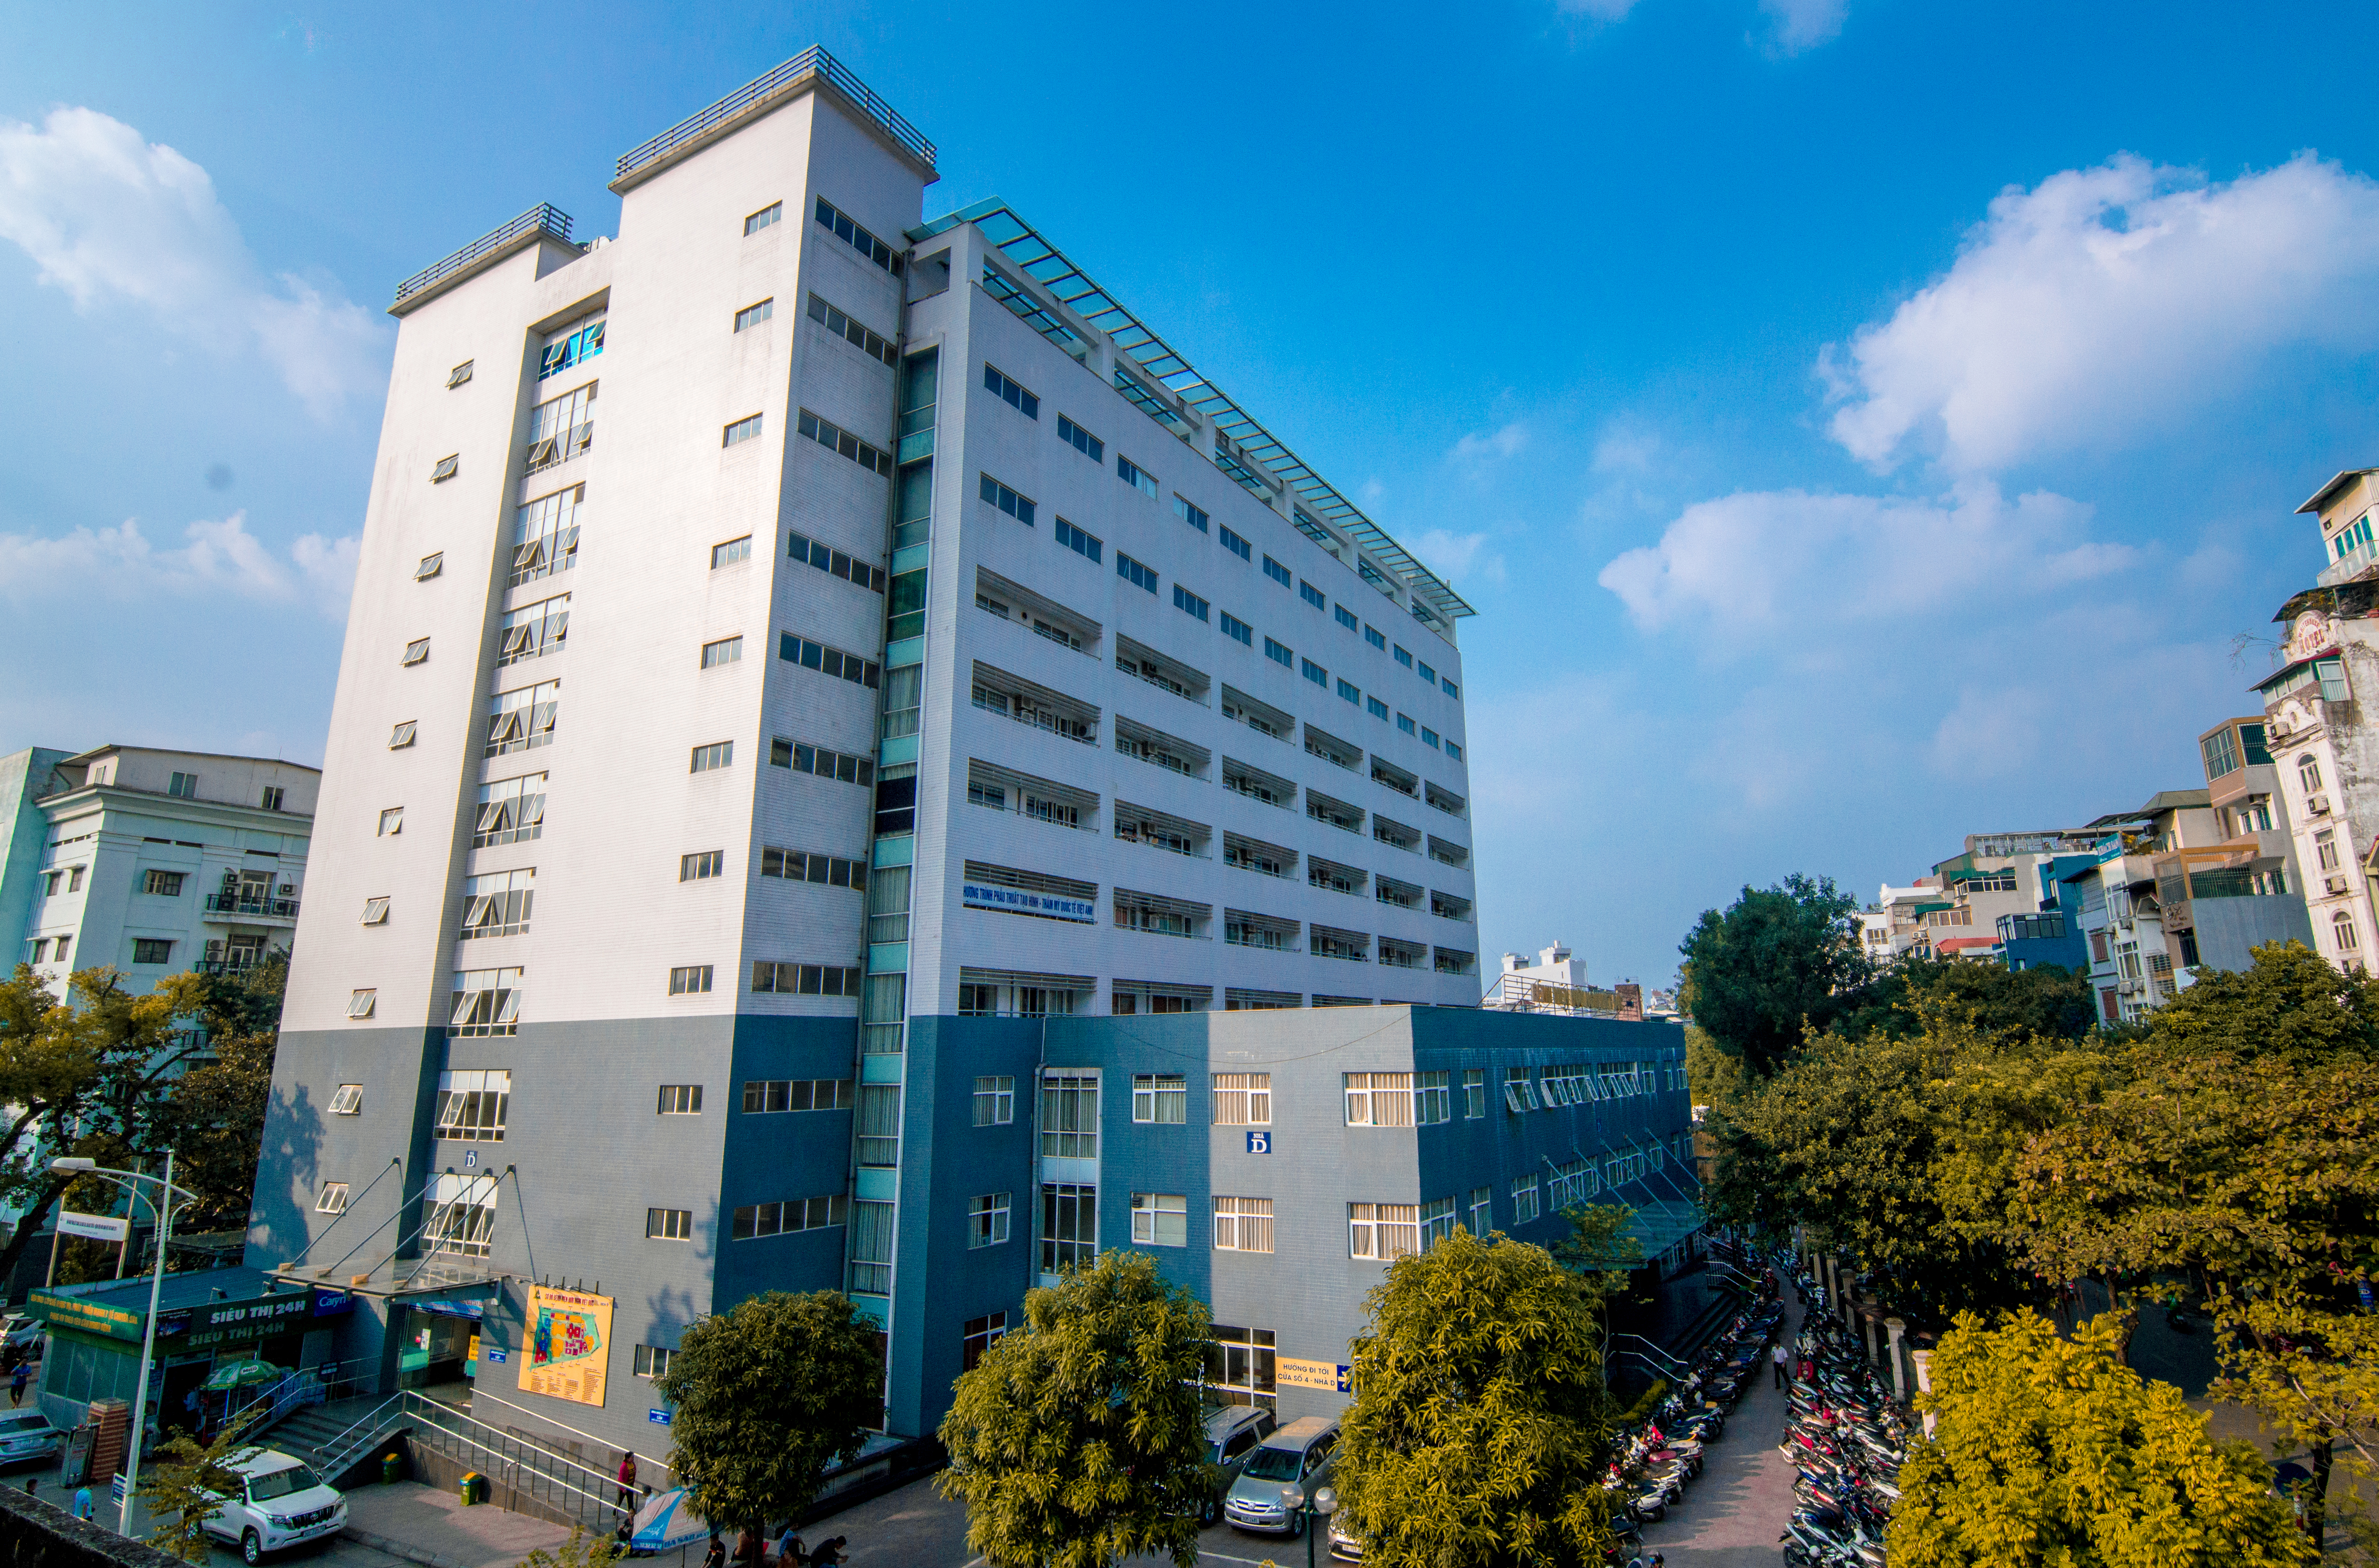 Báo cáo kết quả tự kiểm tra, đánh giá chất lượng Bệnh viện Hữu nghị Việt Đức năm 2020